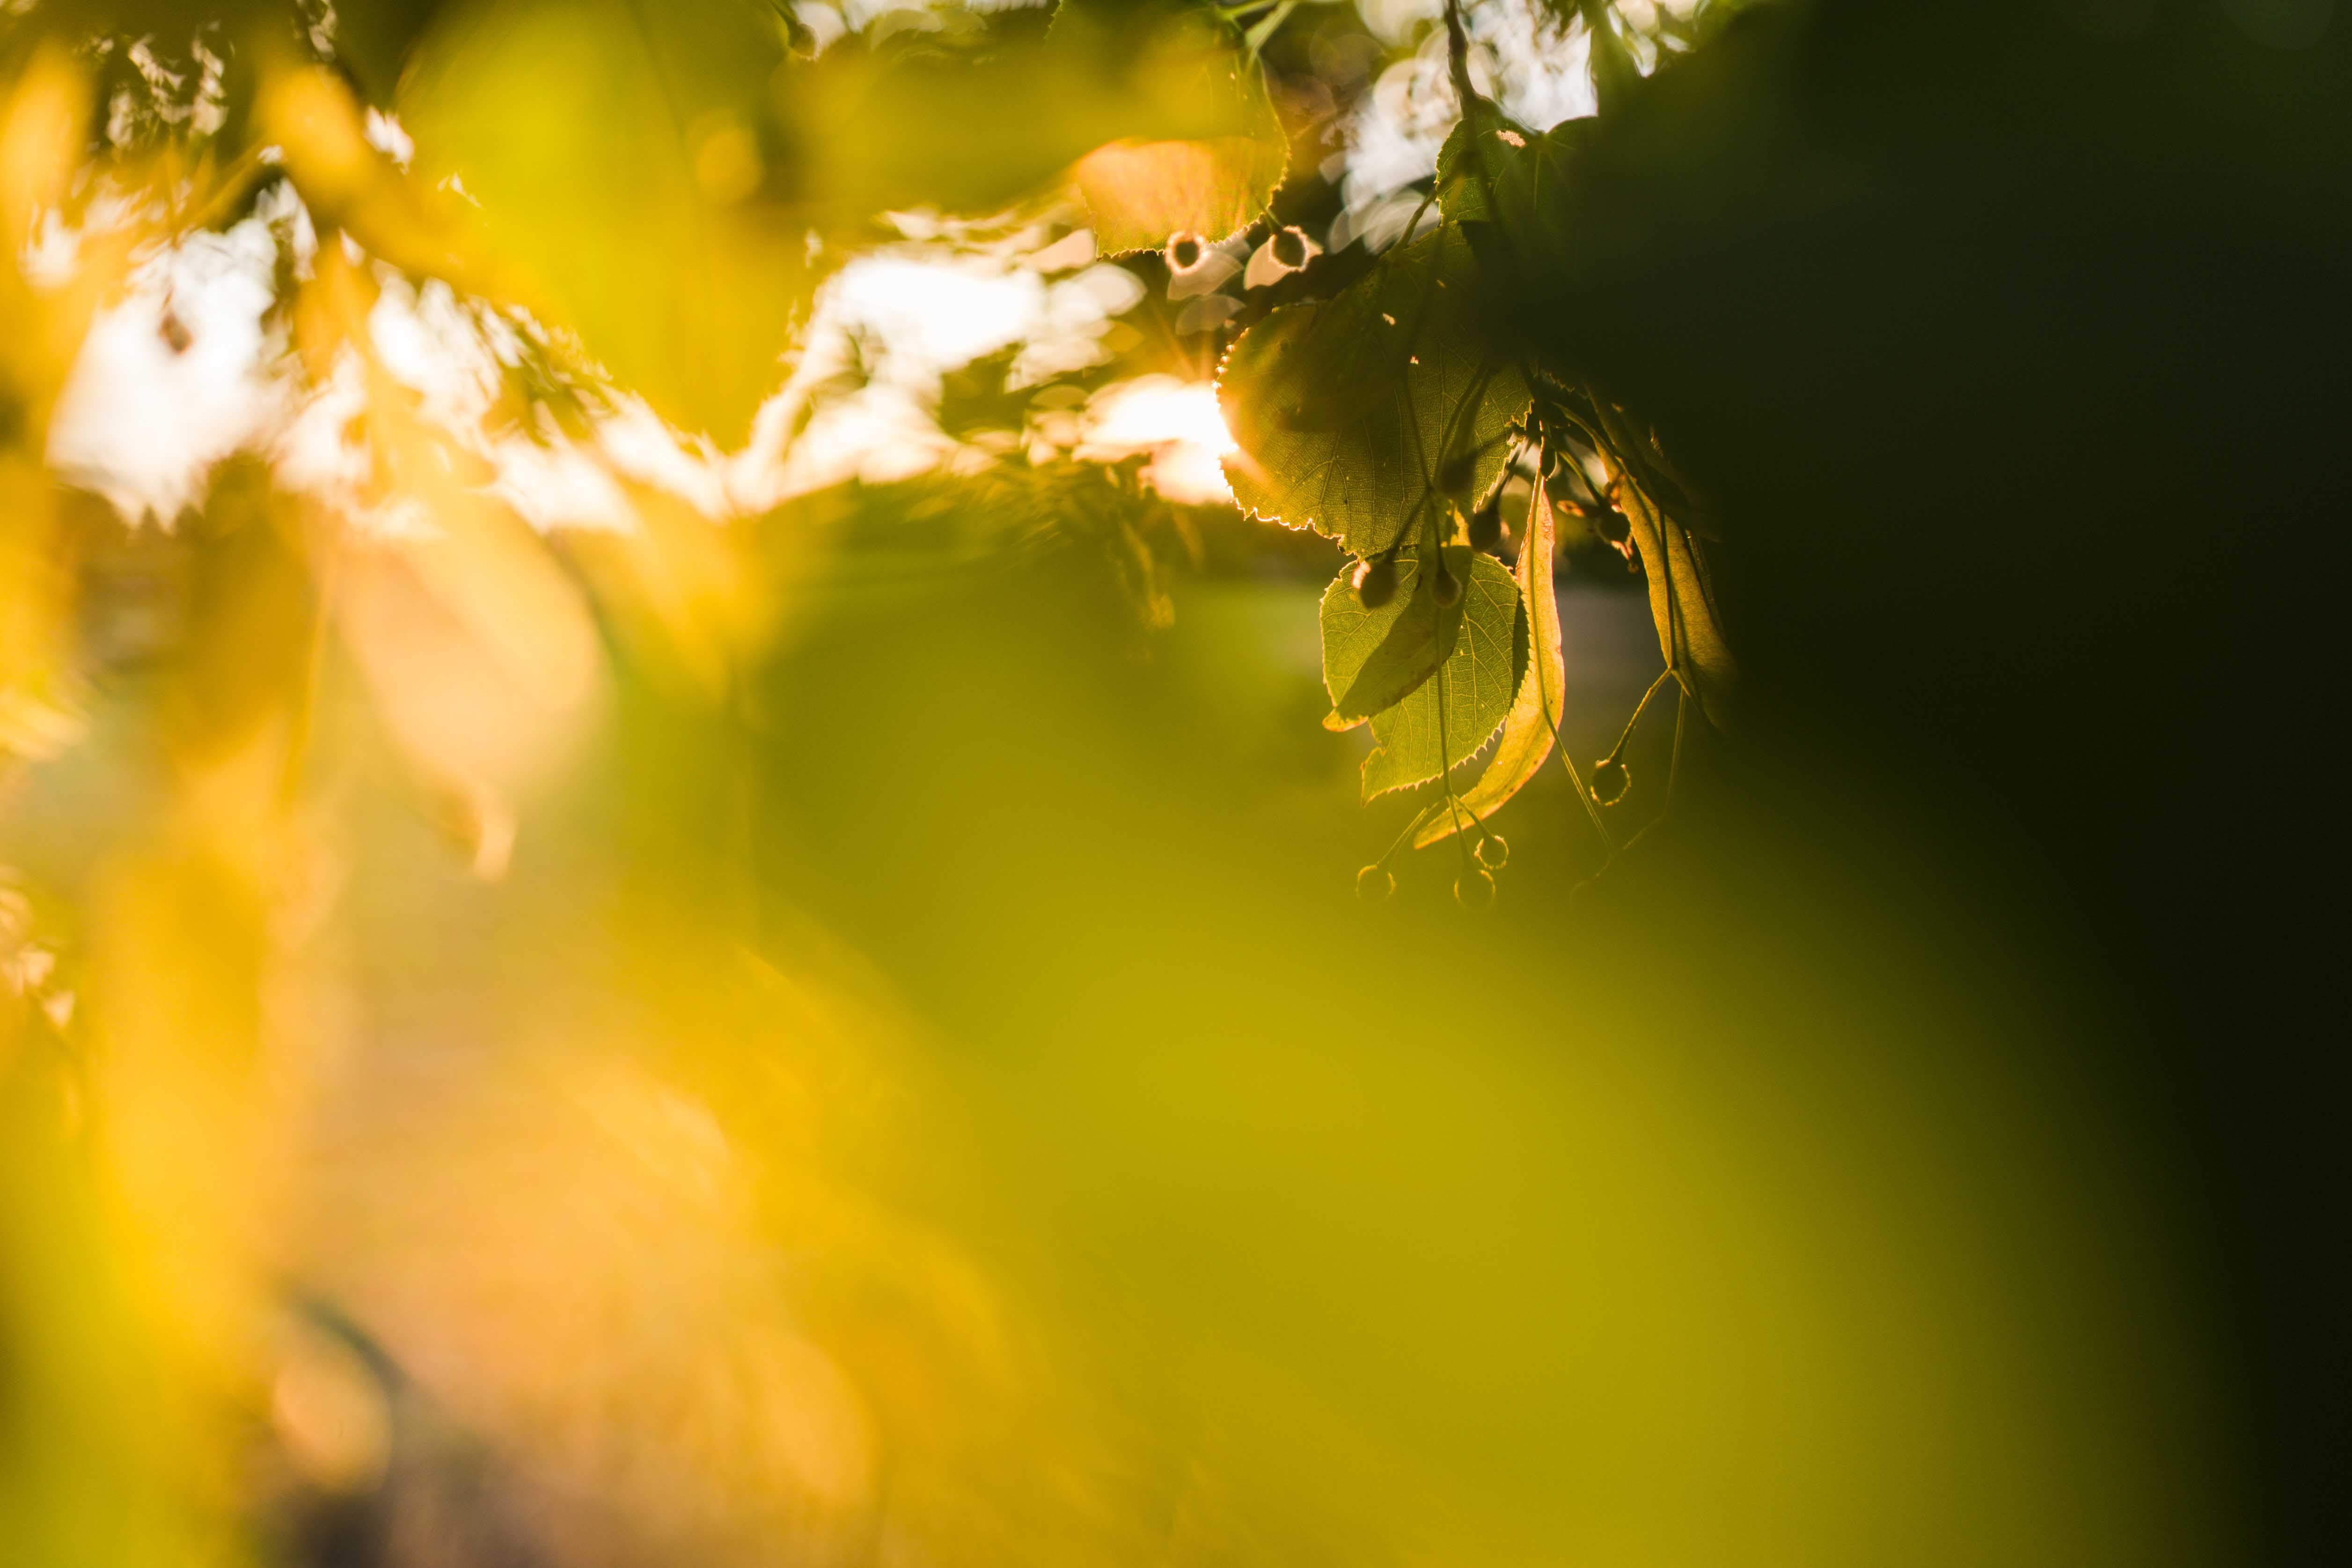 Das Bild zeigt einen Ausschnitt eines Lindenbaums, der im goldenen Sonnenlicht erstrahlt. Das Bild ist ein Nahaufnahme von Blättern und Zweigen eines Lindenbaums. Die Blätter sind grün und werden von der Sonne beleuchtet, was ihnen ein leuchtendes, fast durchscheinendes Aussehen verleiht. Die Sonne scheint durch die Blätter hindurch und erzeugt ein warmes, goldenes Licht, das den Hintergrund füllt. Der Fokus liegt auf einem Cluster von Lindenblättern in der Mitte des Bildes; der Rest des Bildes ist unscharf, was eine traumhafte Atmosphäre schafft.